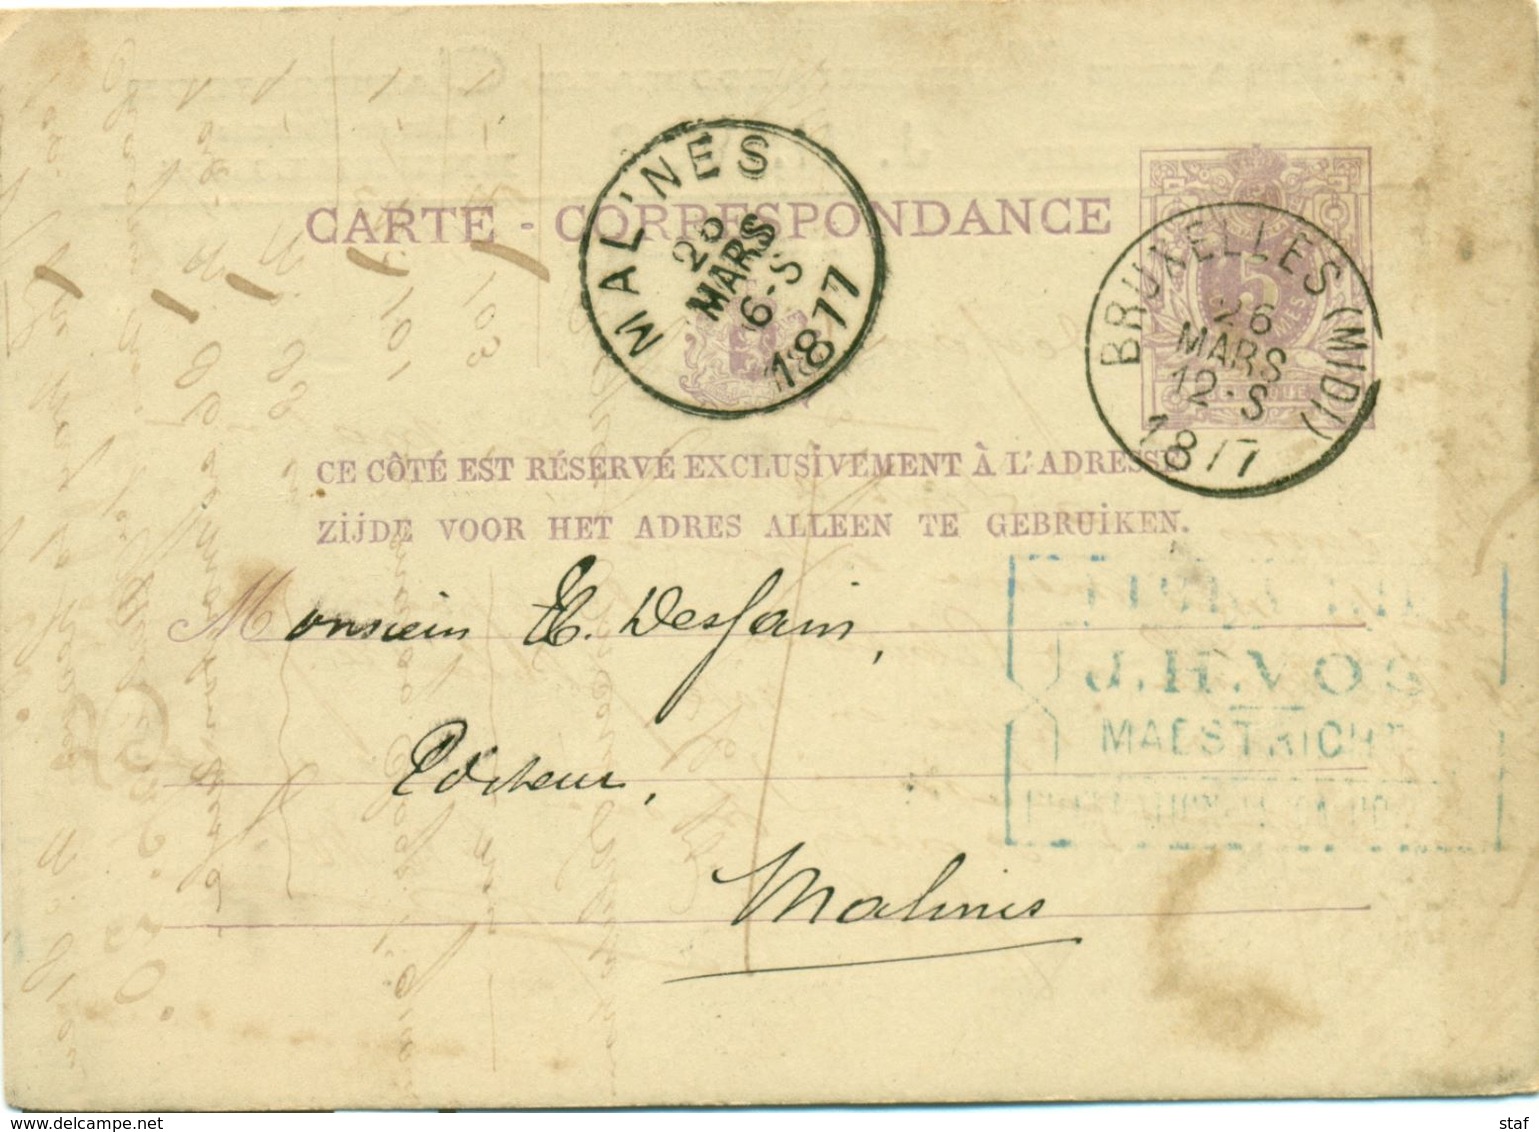 Briefkaart - Carte Correspondance Nr 9 - Afz. Librairie Internationale Catholique J. H. Vos Te Maestricht : 1877 - Druck & Papierwaren